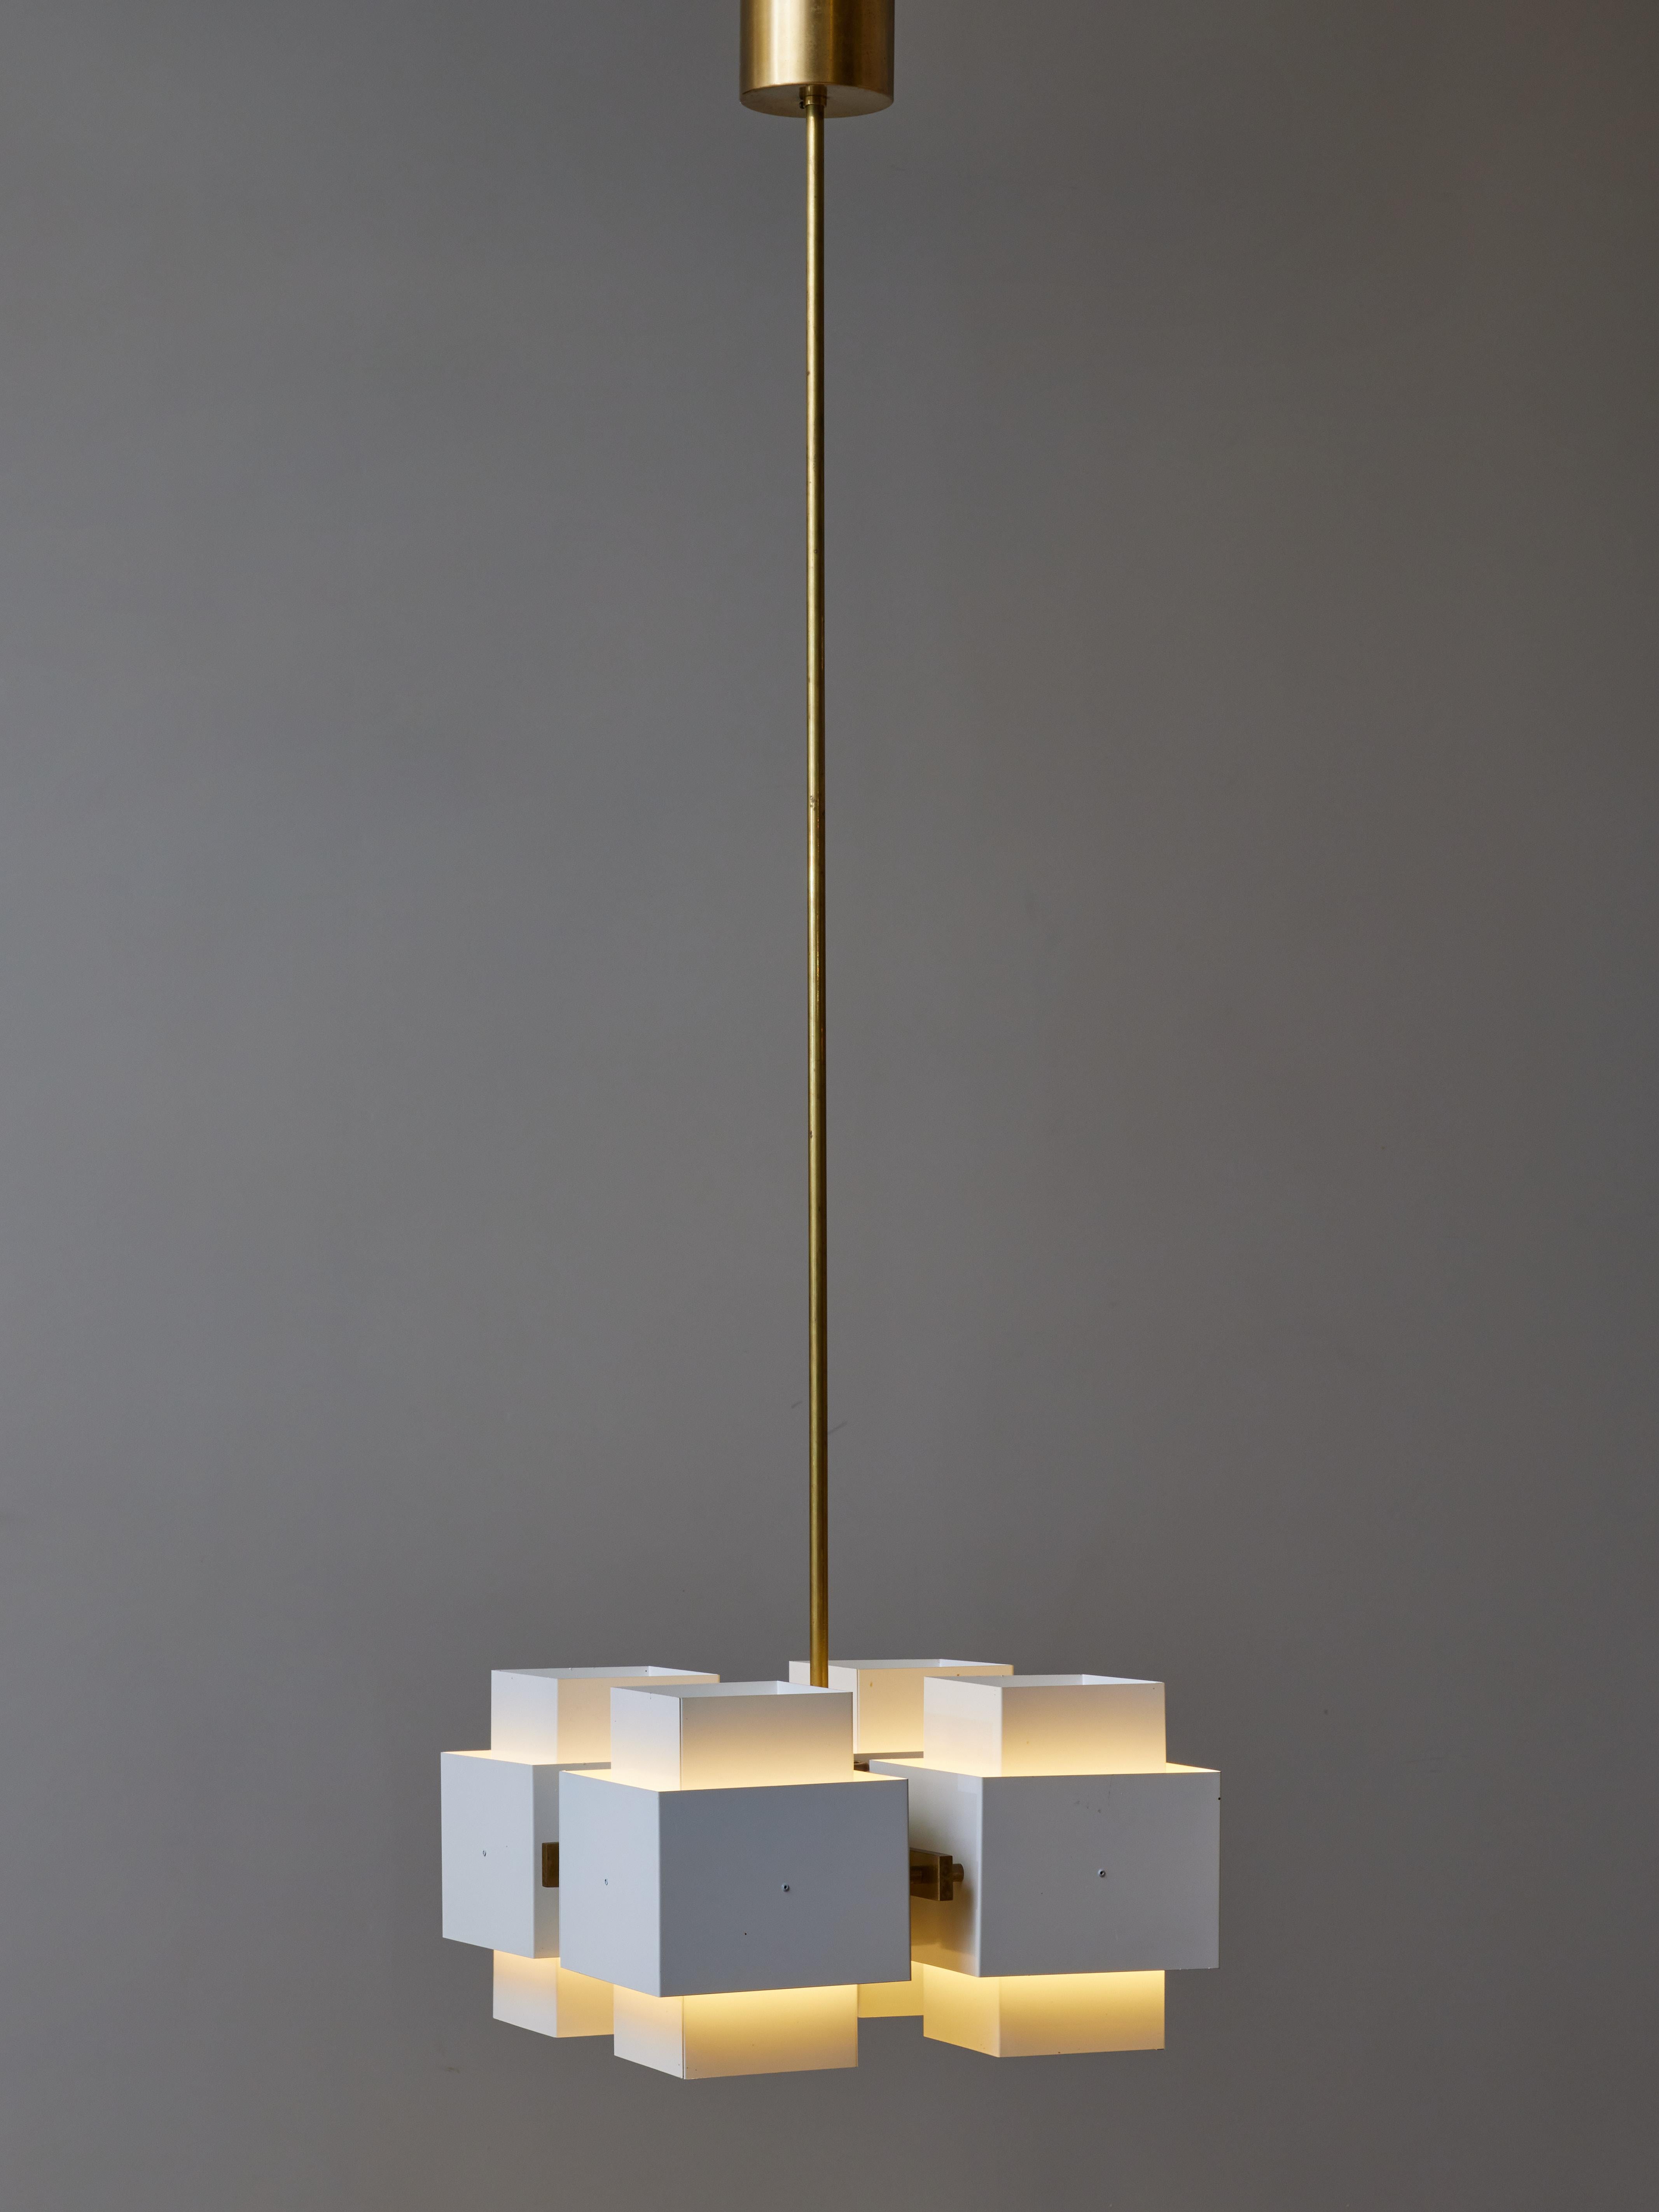 Lustre du maître suédois du design-Light Hans Agnes/One, ce lustre modèle 769/4 est composé de quatre blocs de métal peint contenant chacun une source lumineuse maintenue par un cadre en laiton. Longue tige verticale pouvant être